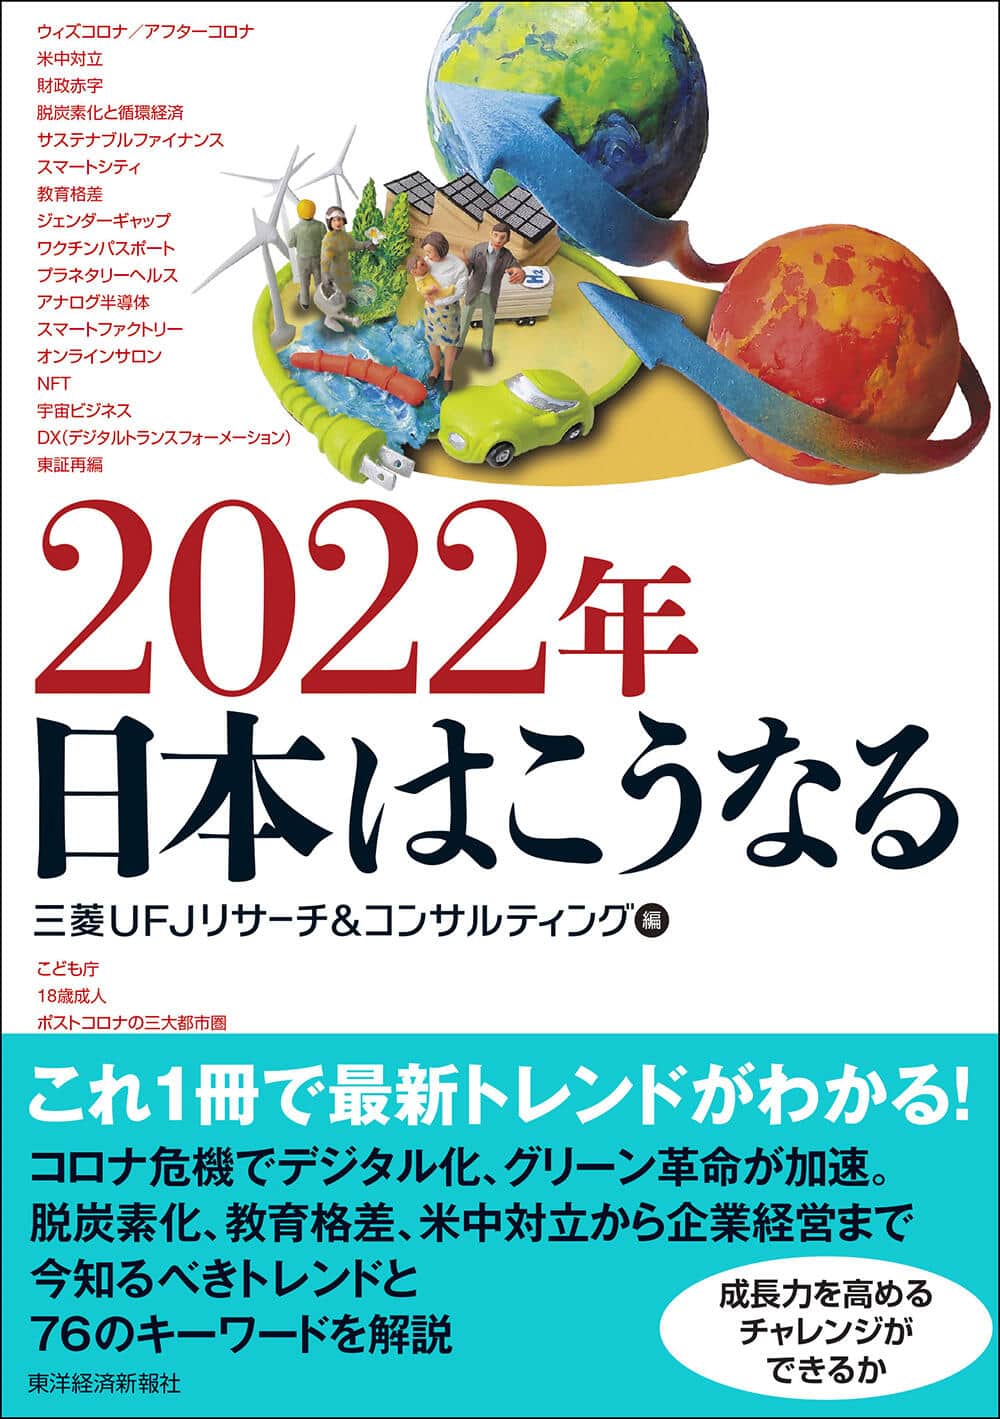 「2022年　日本はこうなる」
三菱UFJリサーチ＆コンサルティング編
1980円（税込）　